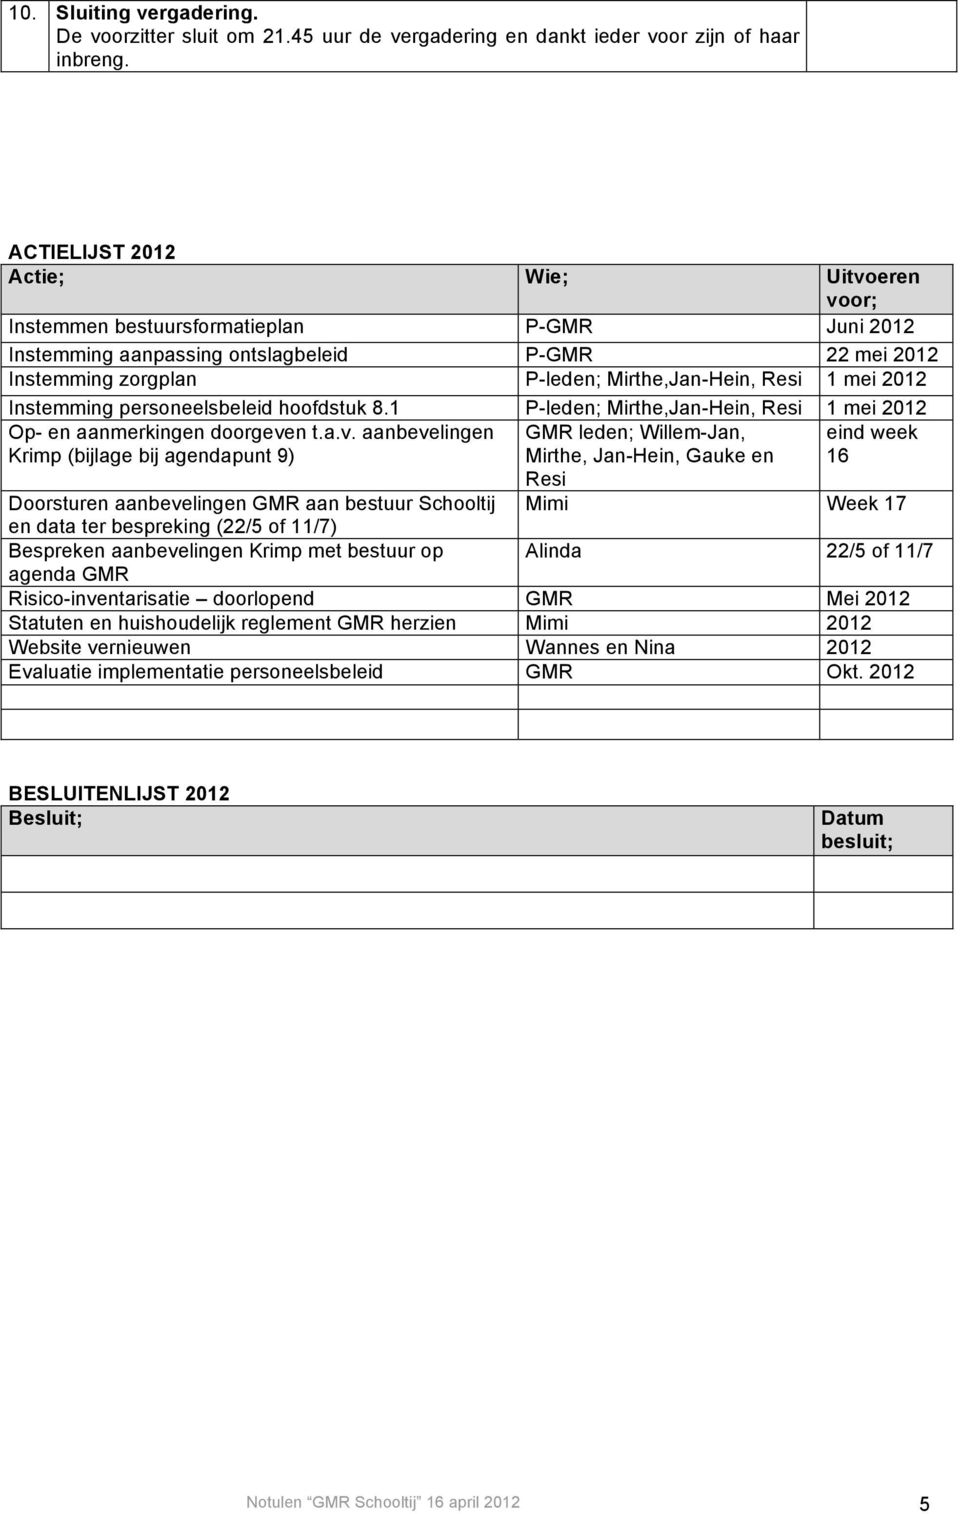 personeelsbeleid hoofdstuk 8.1 P-leden; Mirthe,Jan-Hein, Resi 1 mei 2012 Op- en aanmerkingen doorgeve